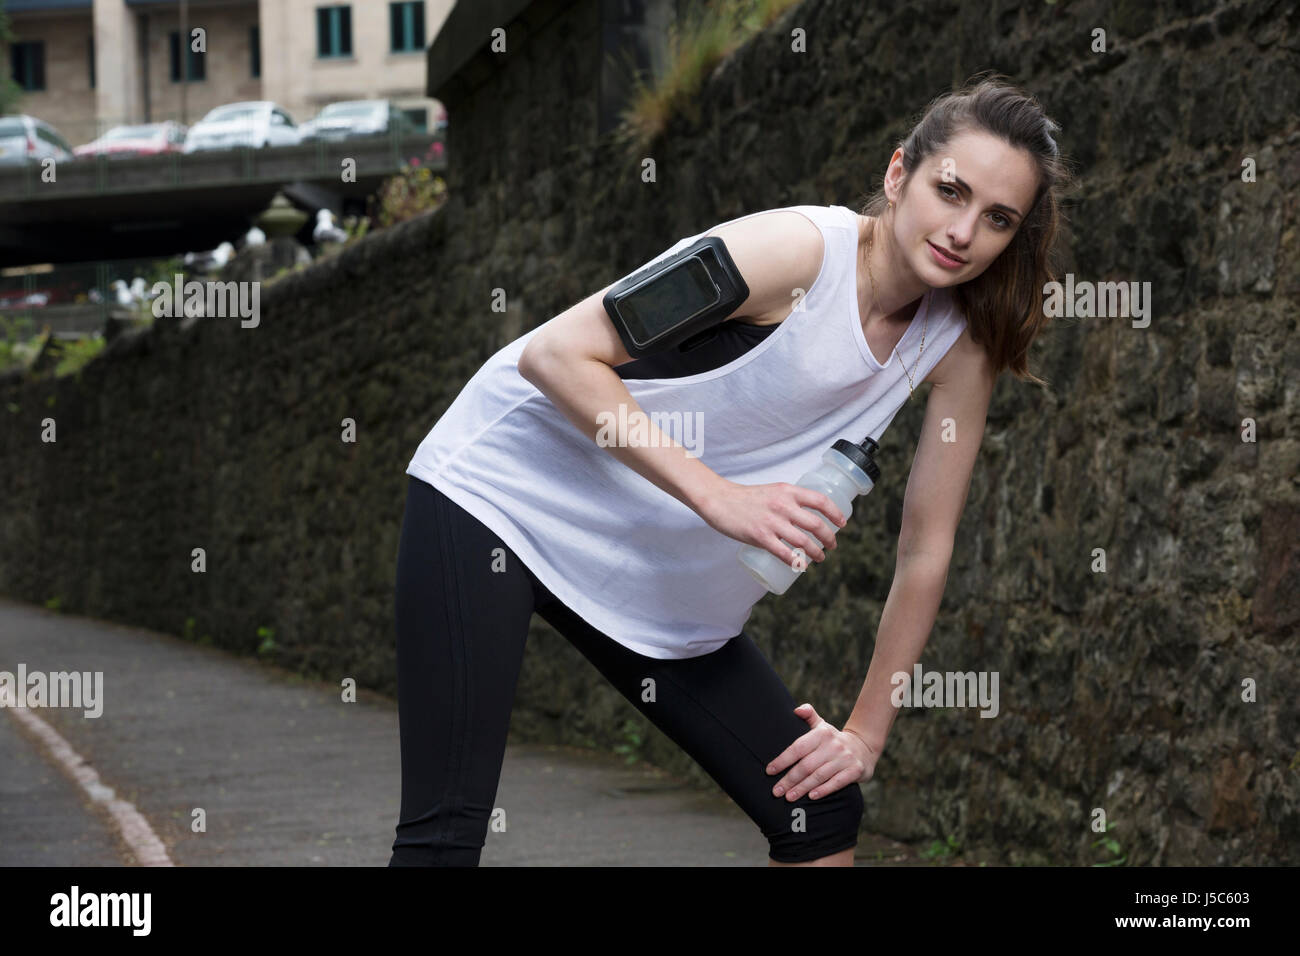 Sportliche Frau Trinkwasser, während Training draußen in einer natürlichen Umgebung. Aktion und gesunden Lifestyle-Konzept. Stockfoto